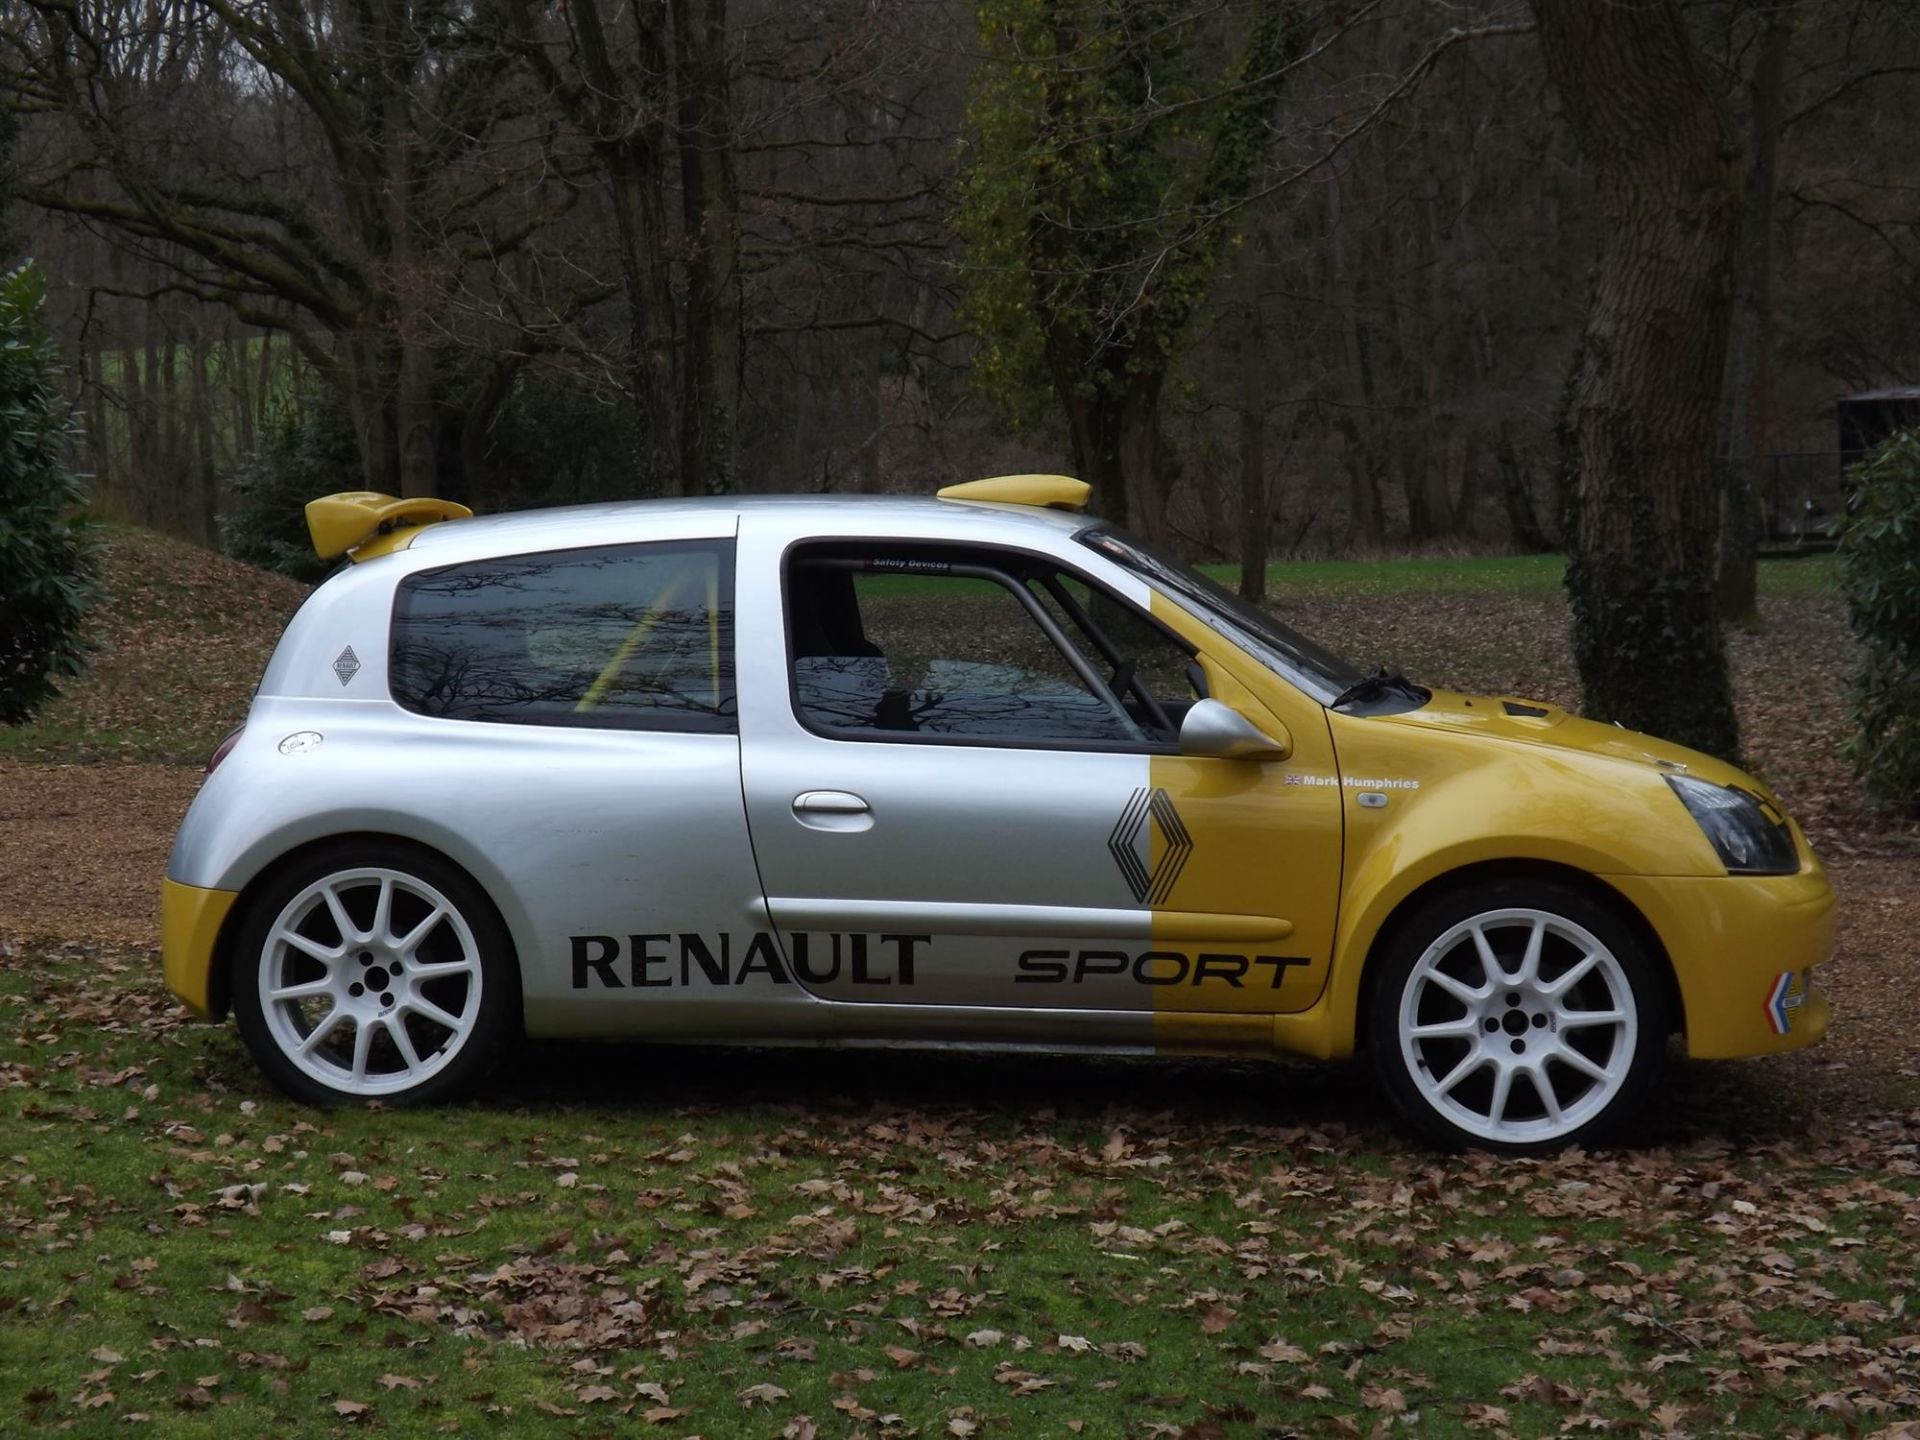 2000 Renault Clio 172 Prima Sport - Image 10 of 10